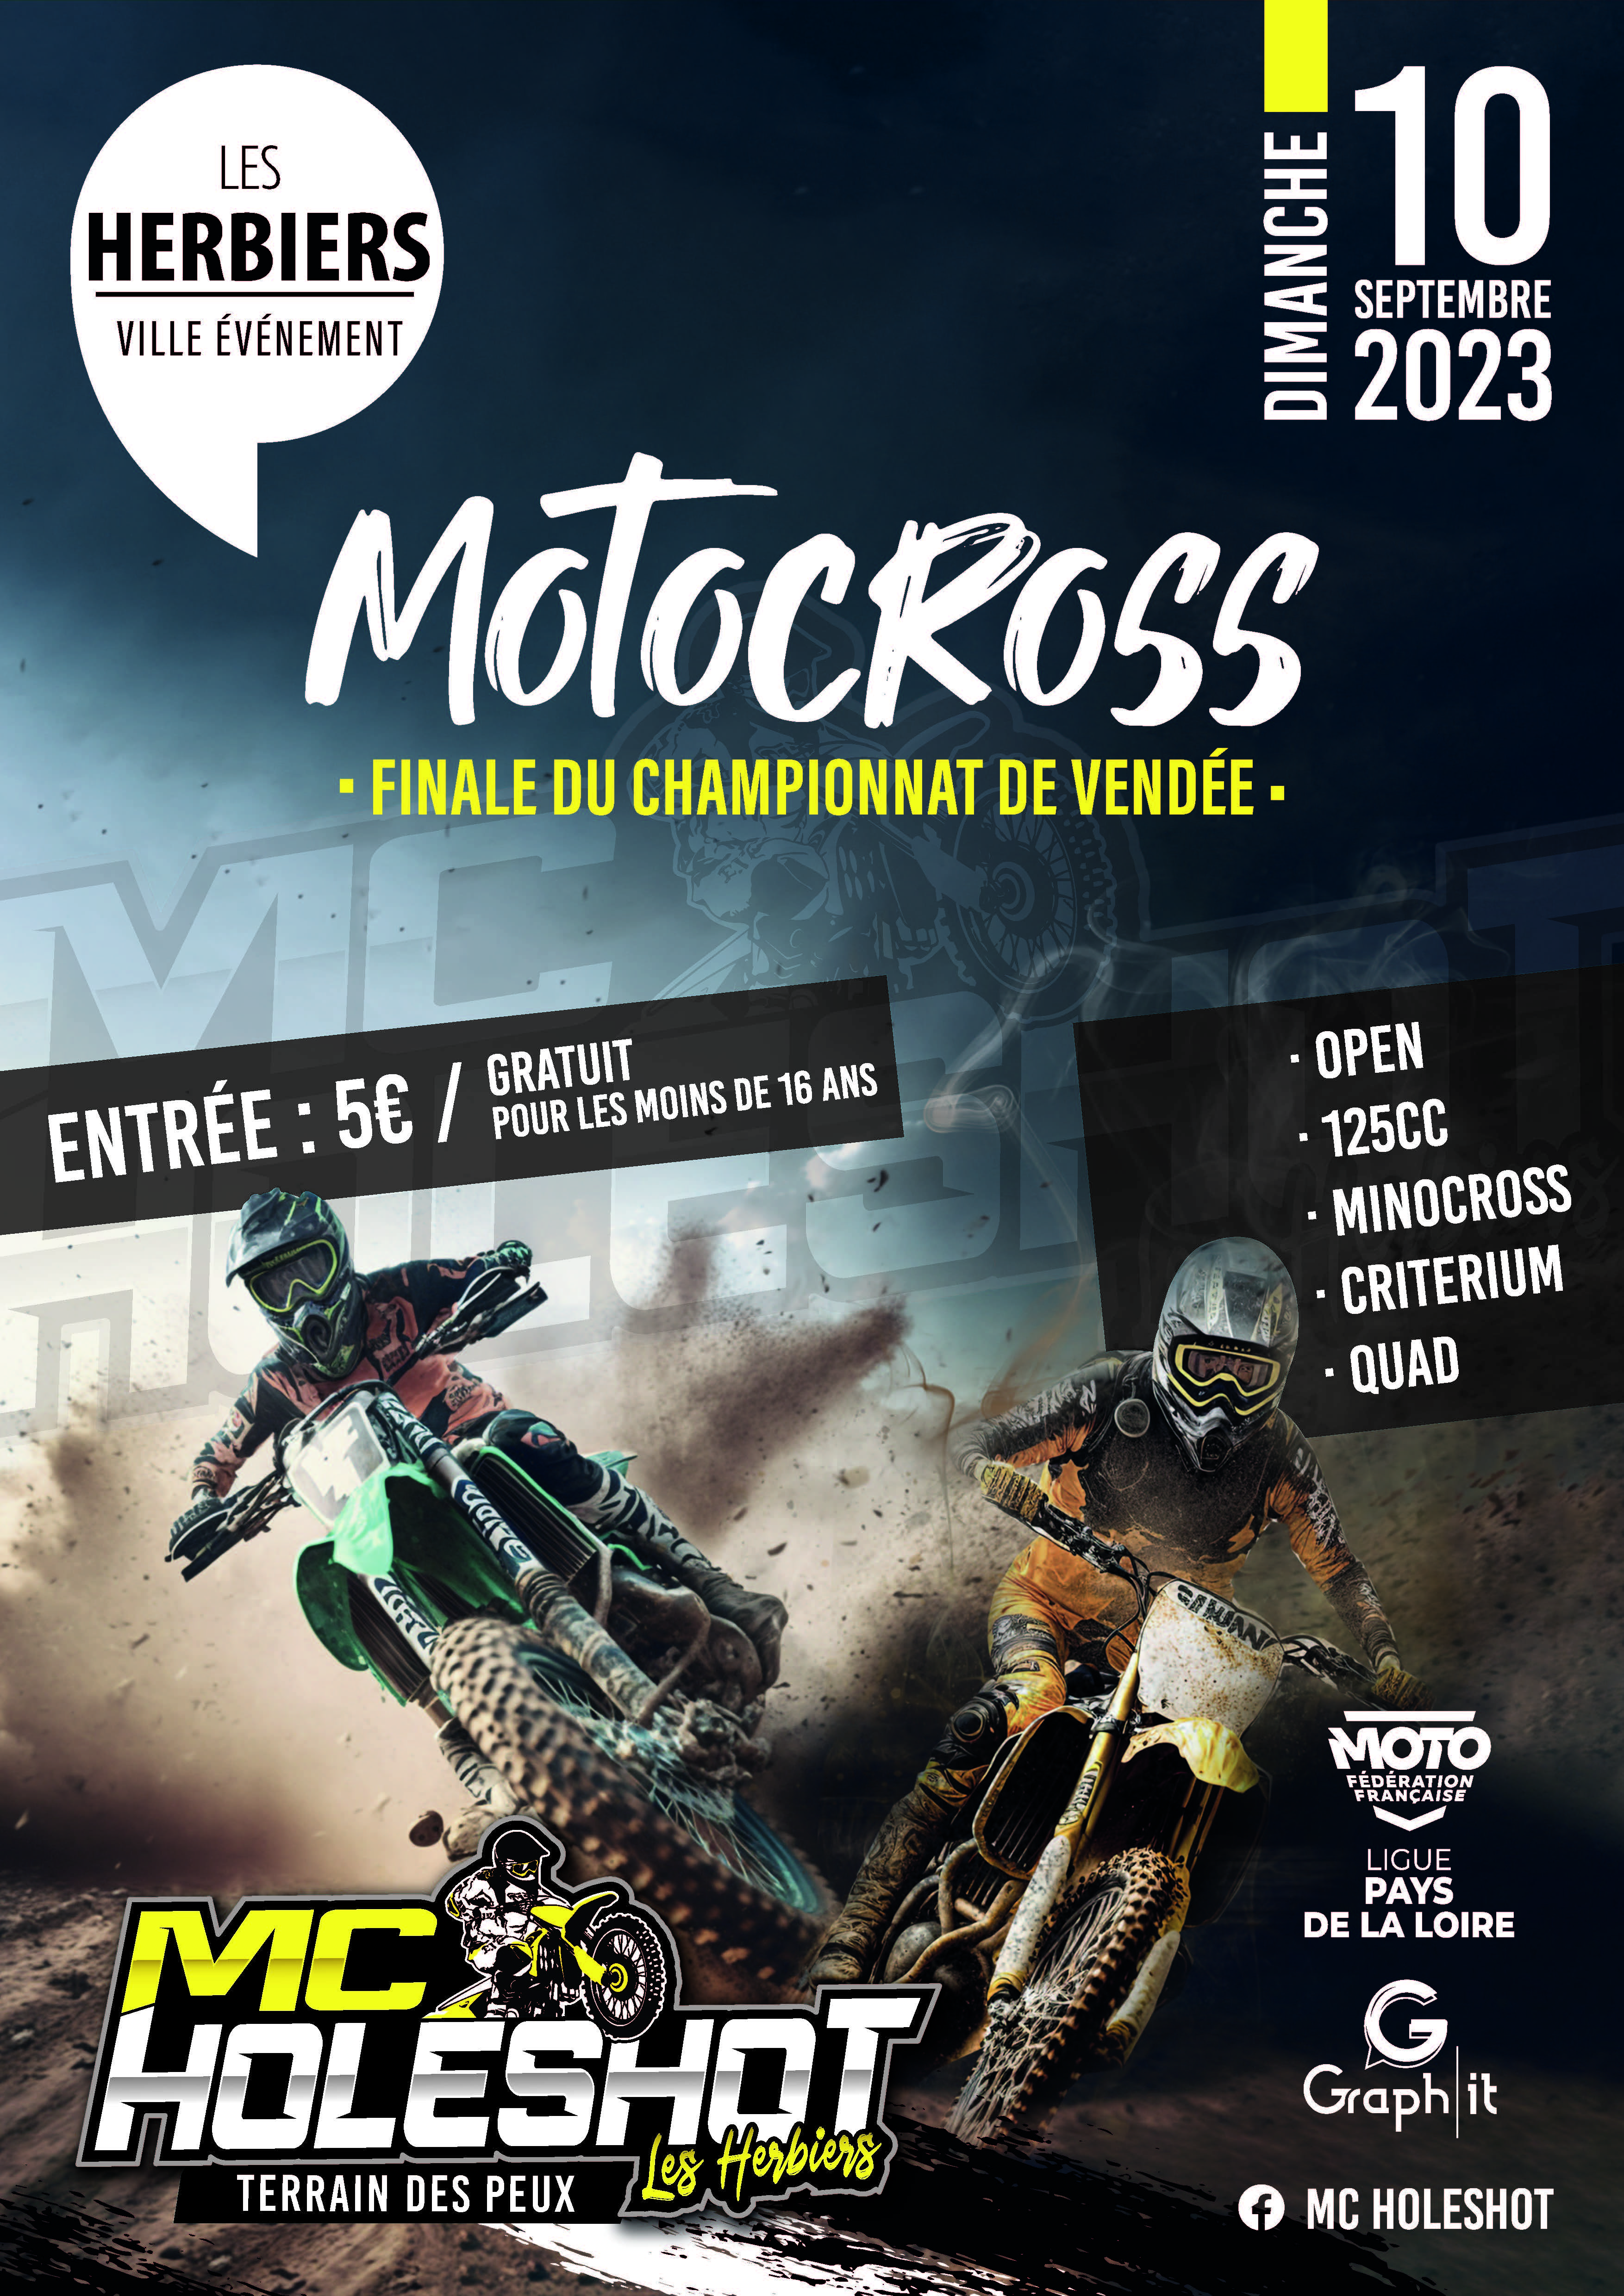 Info Motocross - Les Herbiers 10 septembre